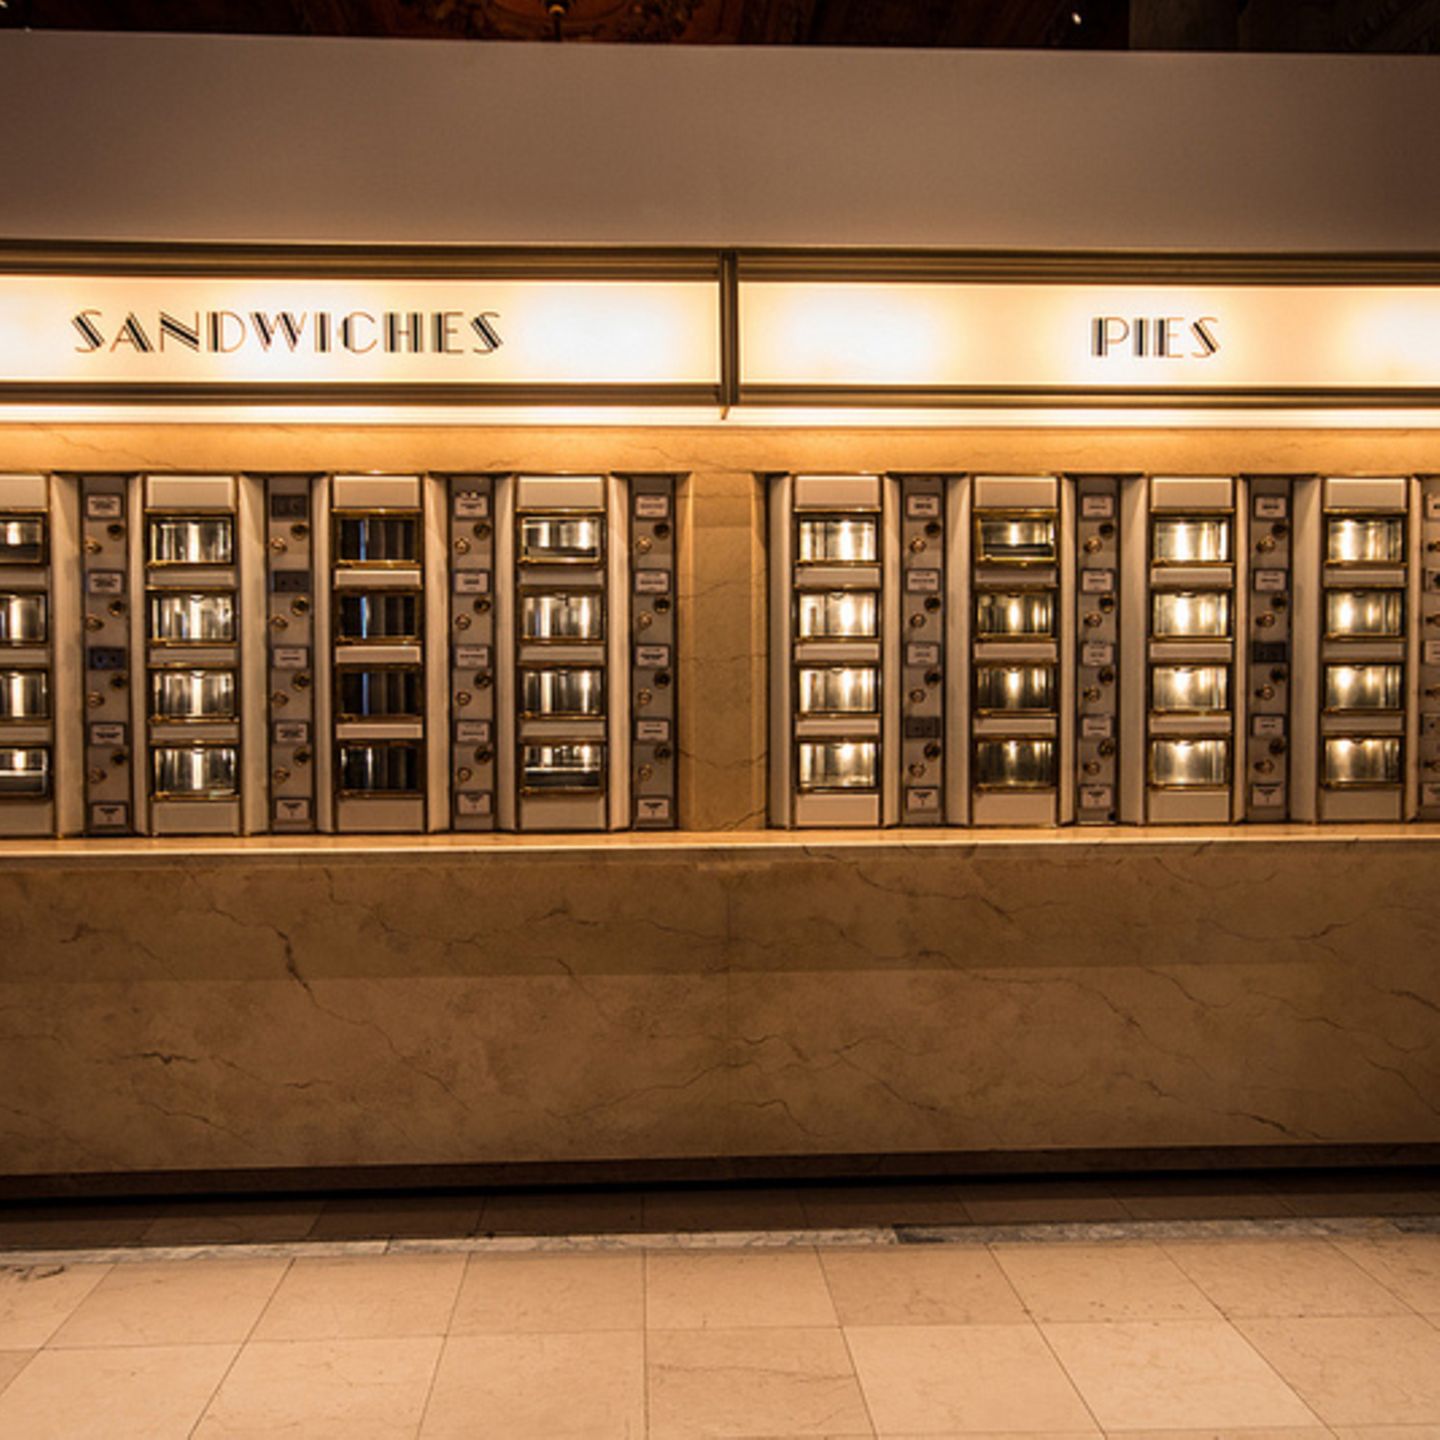 Restaurierter Essens-Automat in der Ausstellung